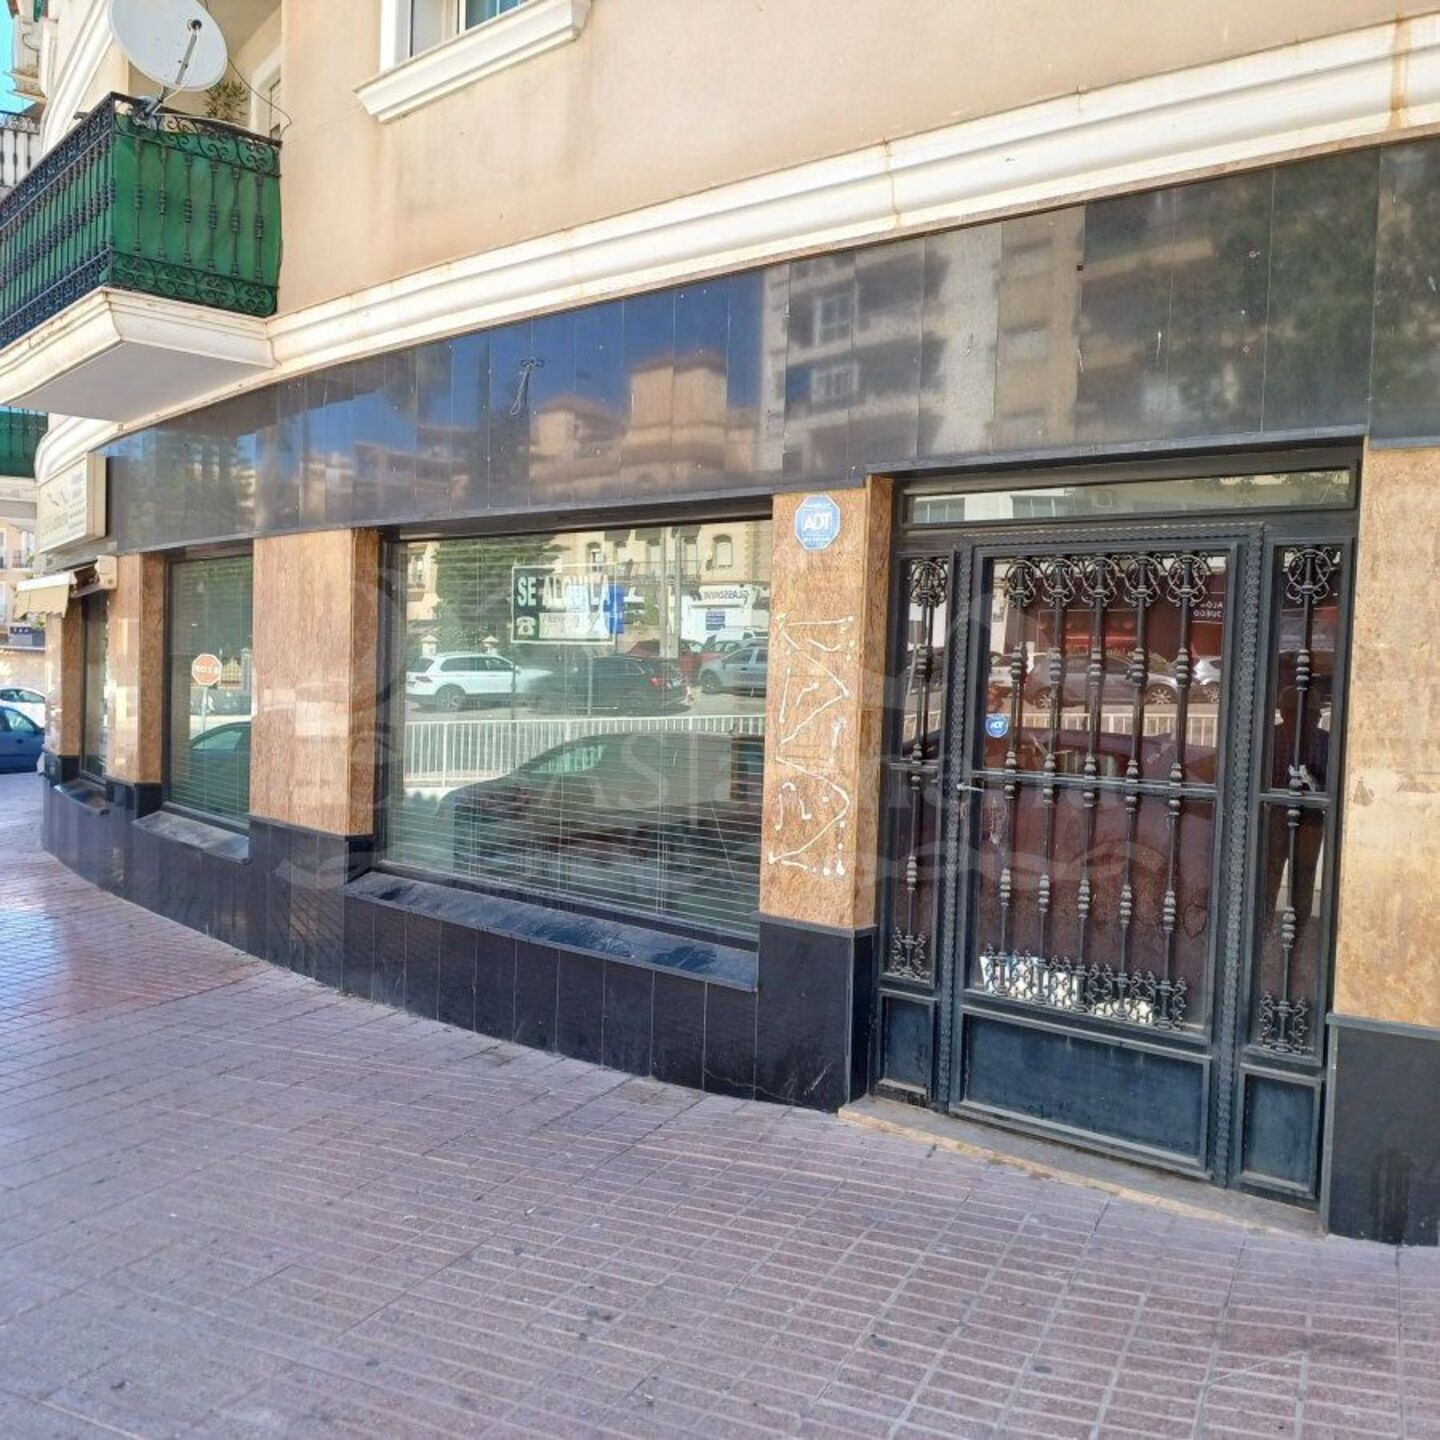 R22229: Local Comercial para alquiler en Huercal-Overa, Almería